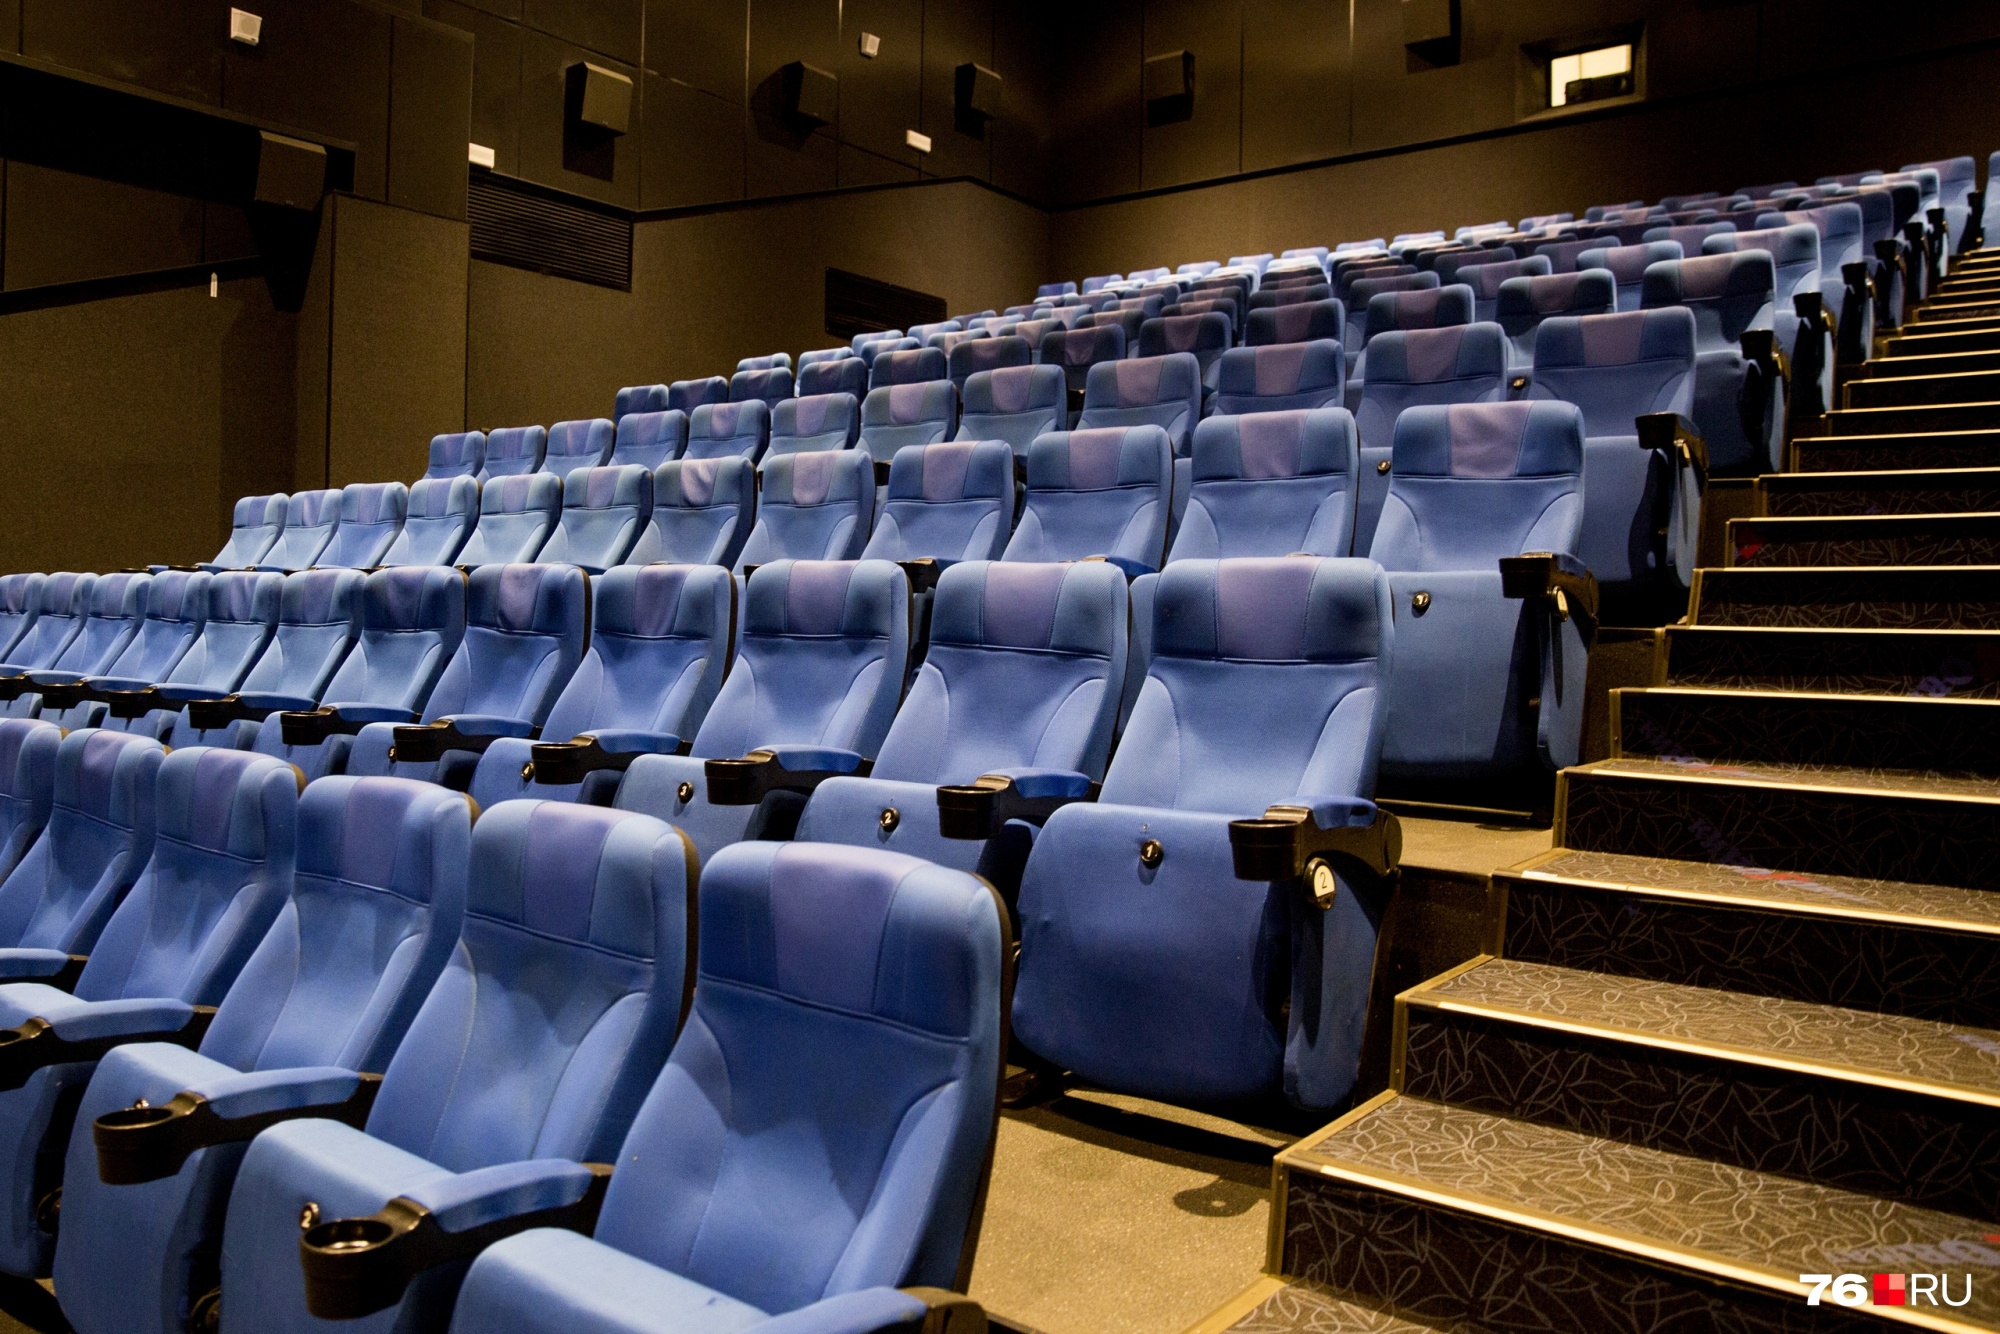 Залы кинотеатров почти полностью опустели